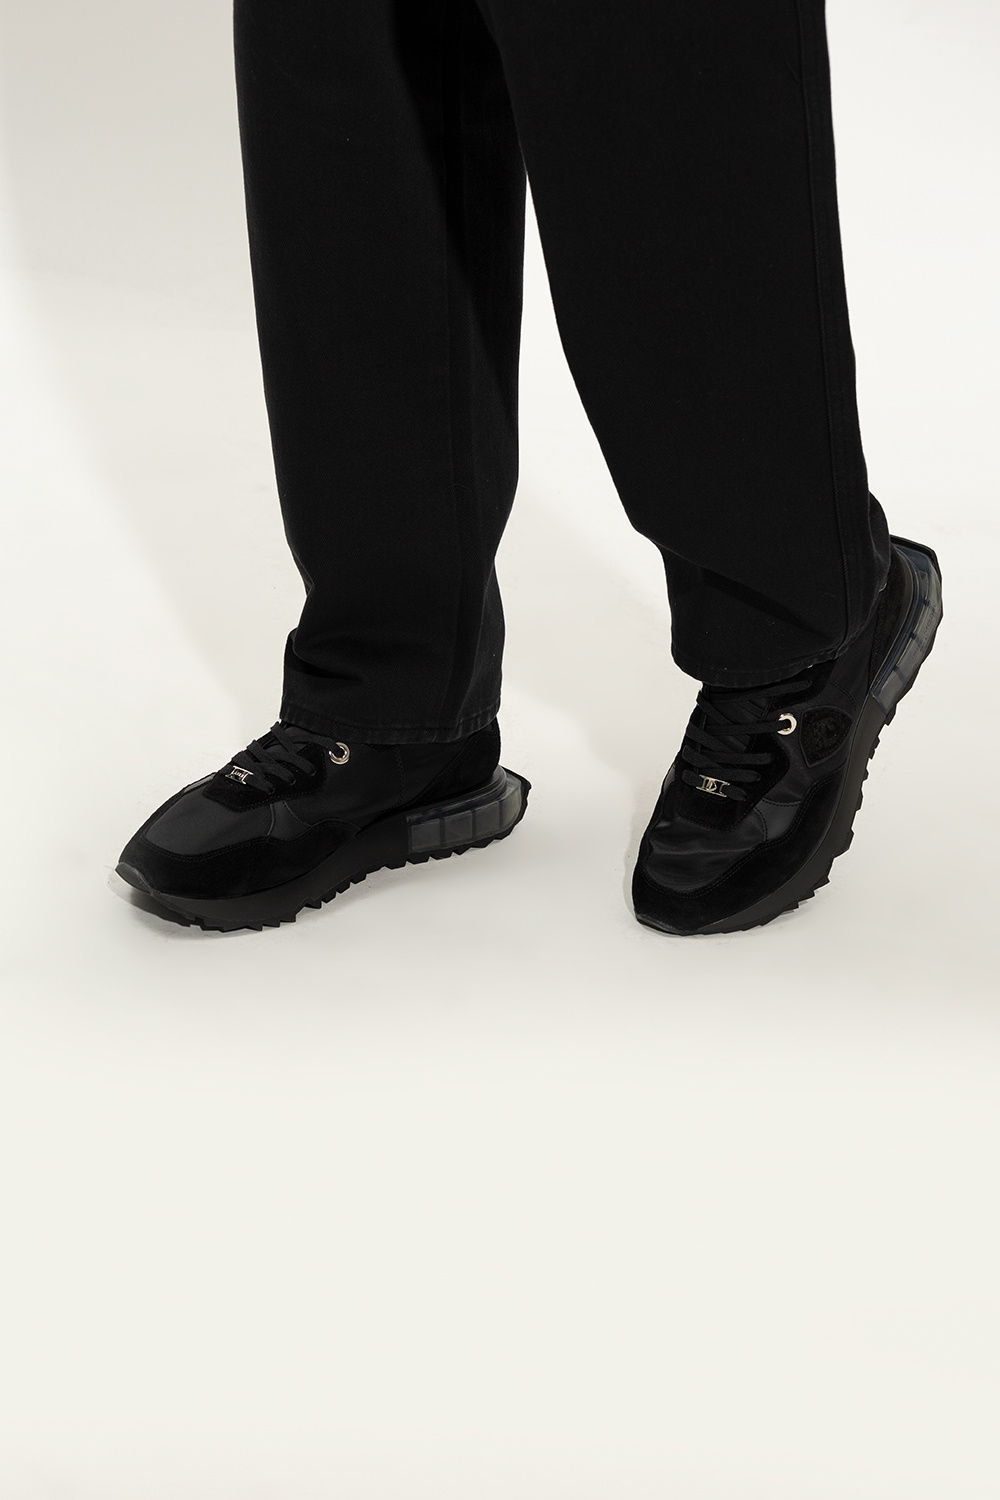 Black 'La Rue Low' sneakers Philippe Model - leopard-print slip-on boots -  VbjdevelopmentsShops Canada